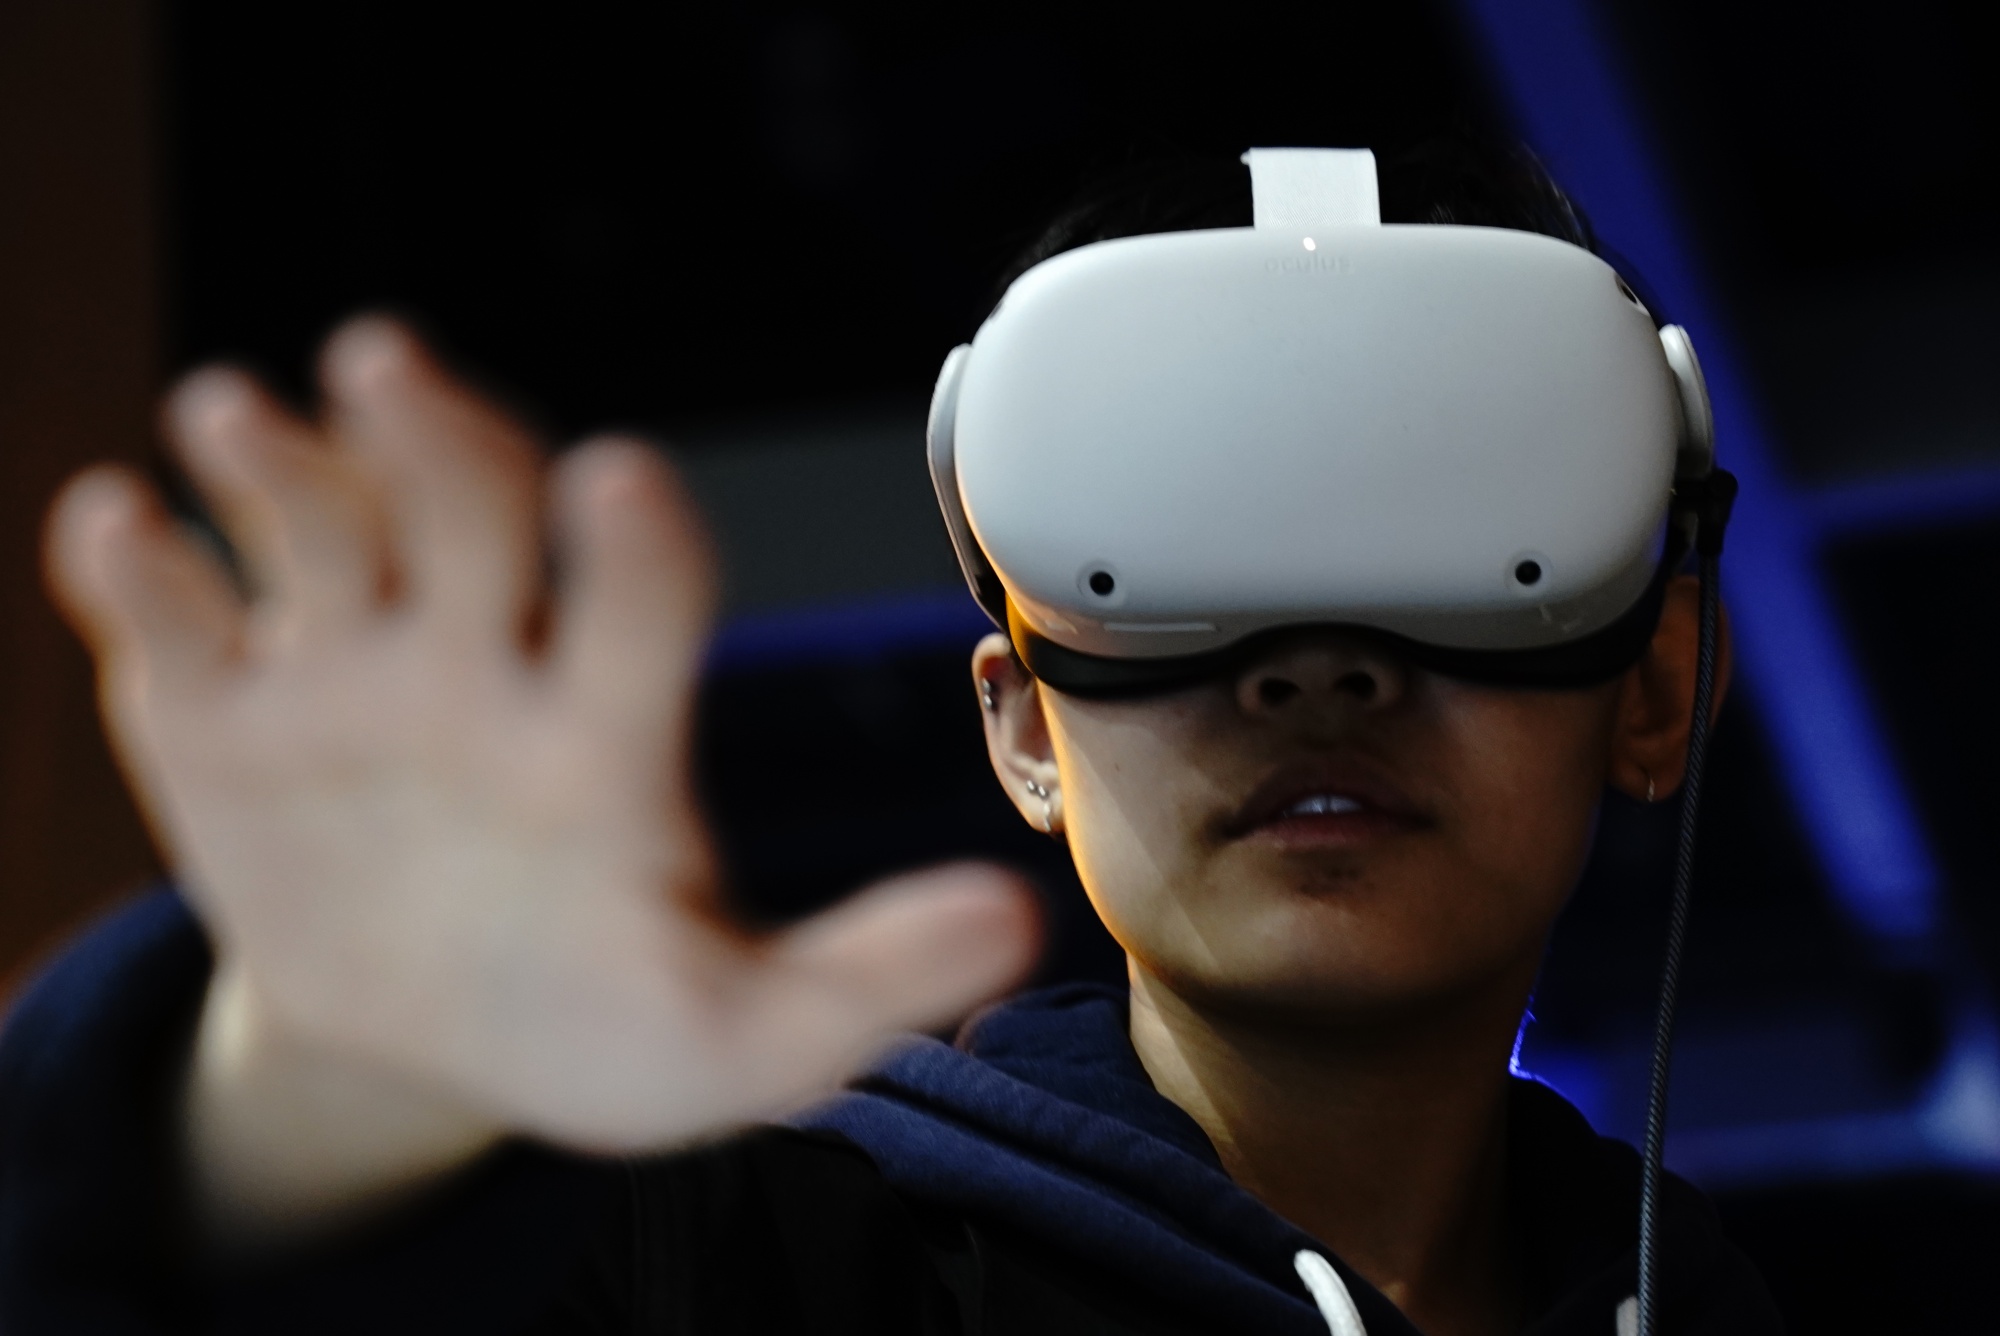 图片展示一位戴着虚拟现实头盔的人，伸出手掌仿佛在触摸或操作虚拟物体，表情专注，背景模糊。